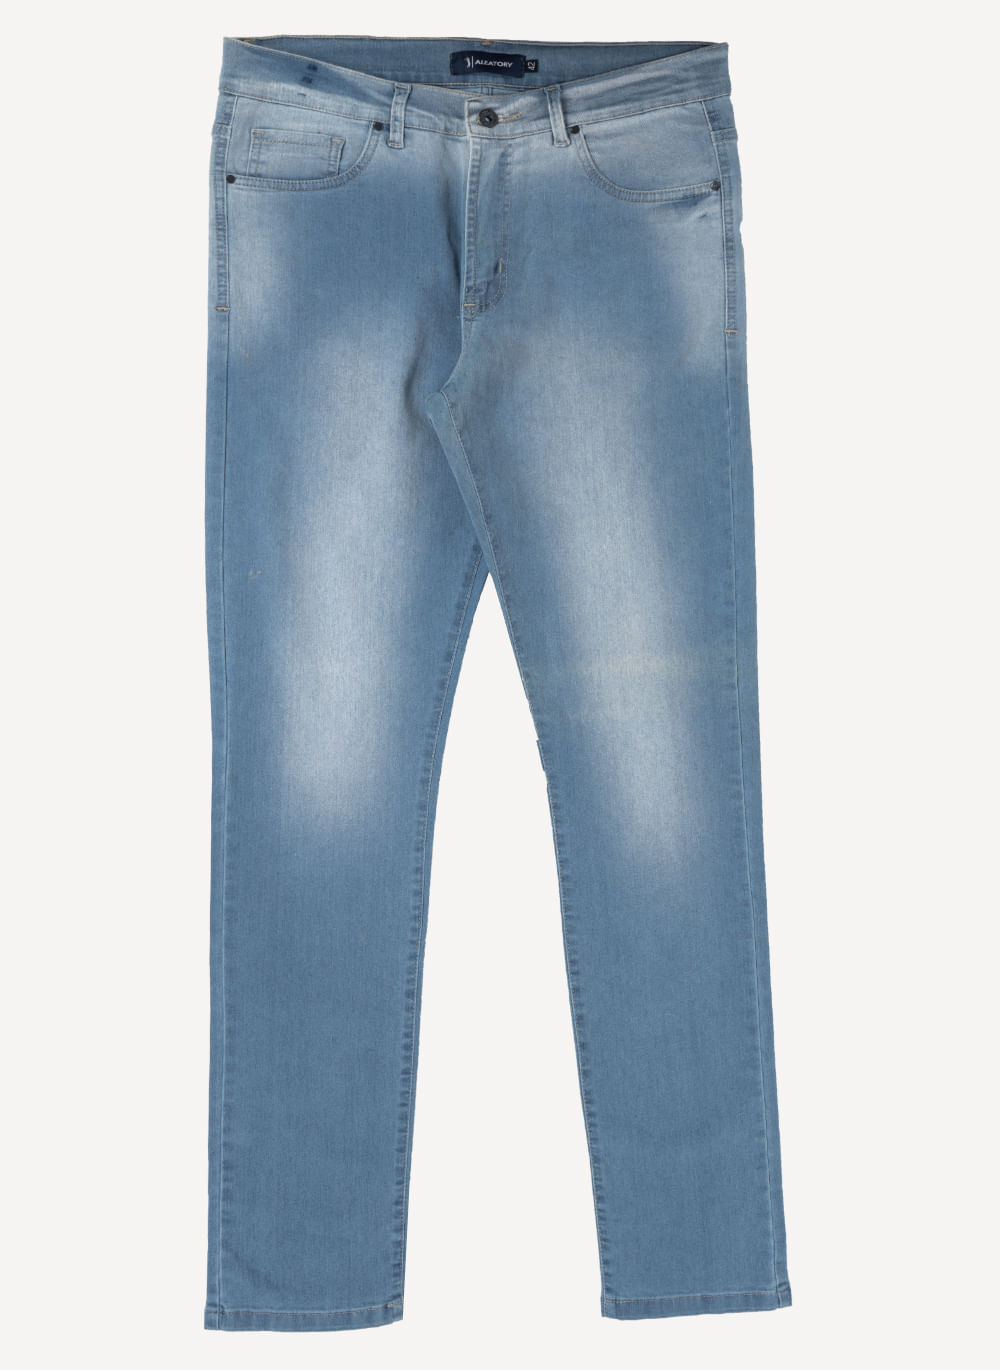 Calca-Jeans-Aleatory-Time-Azul-50